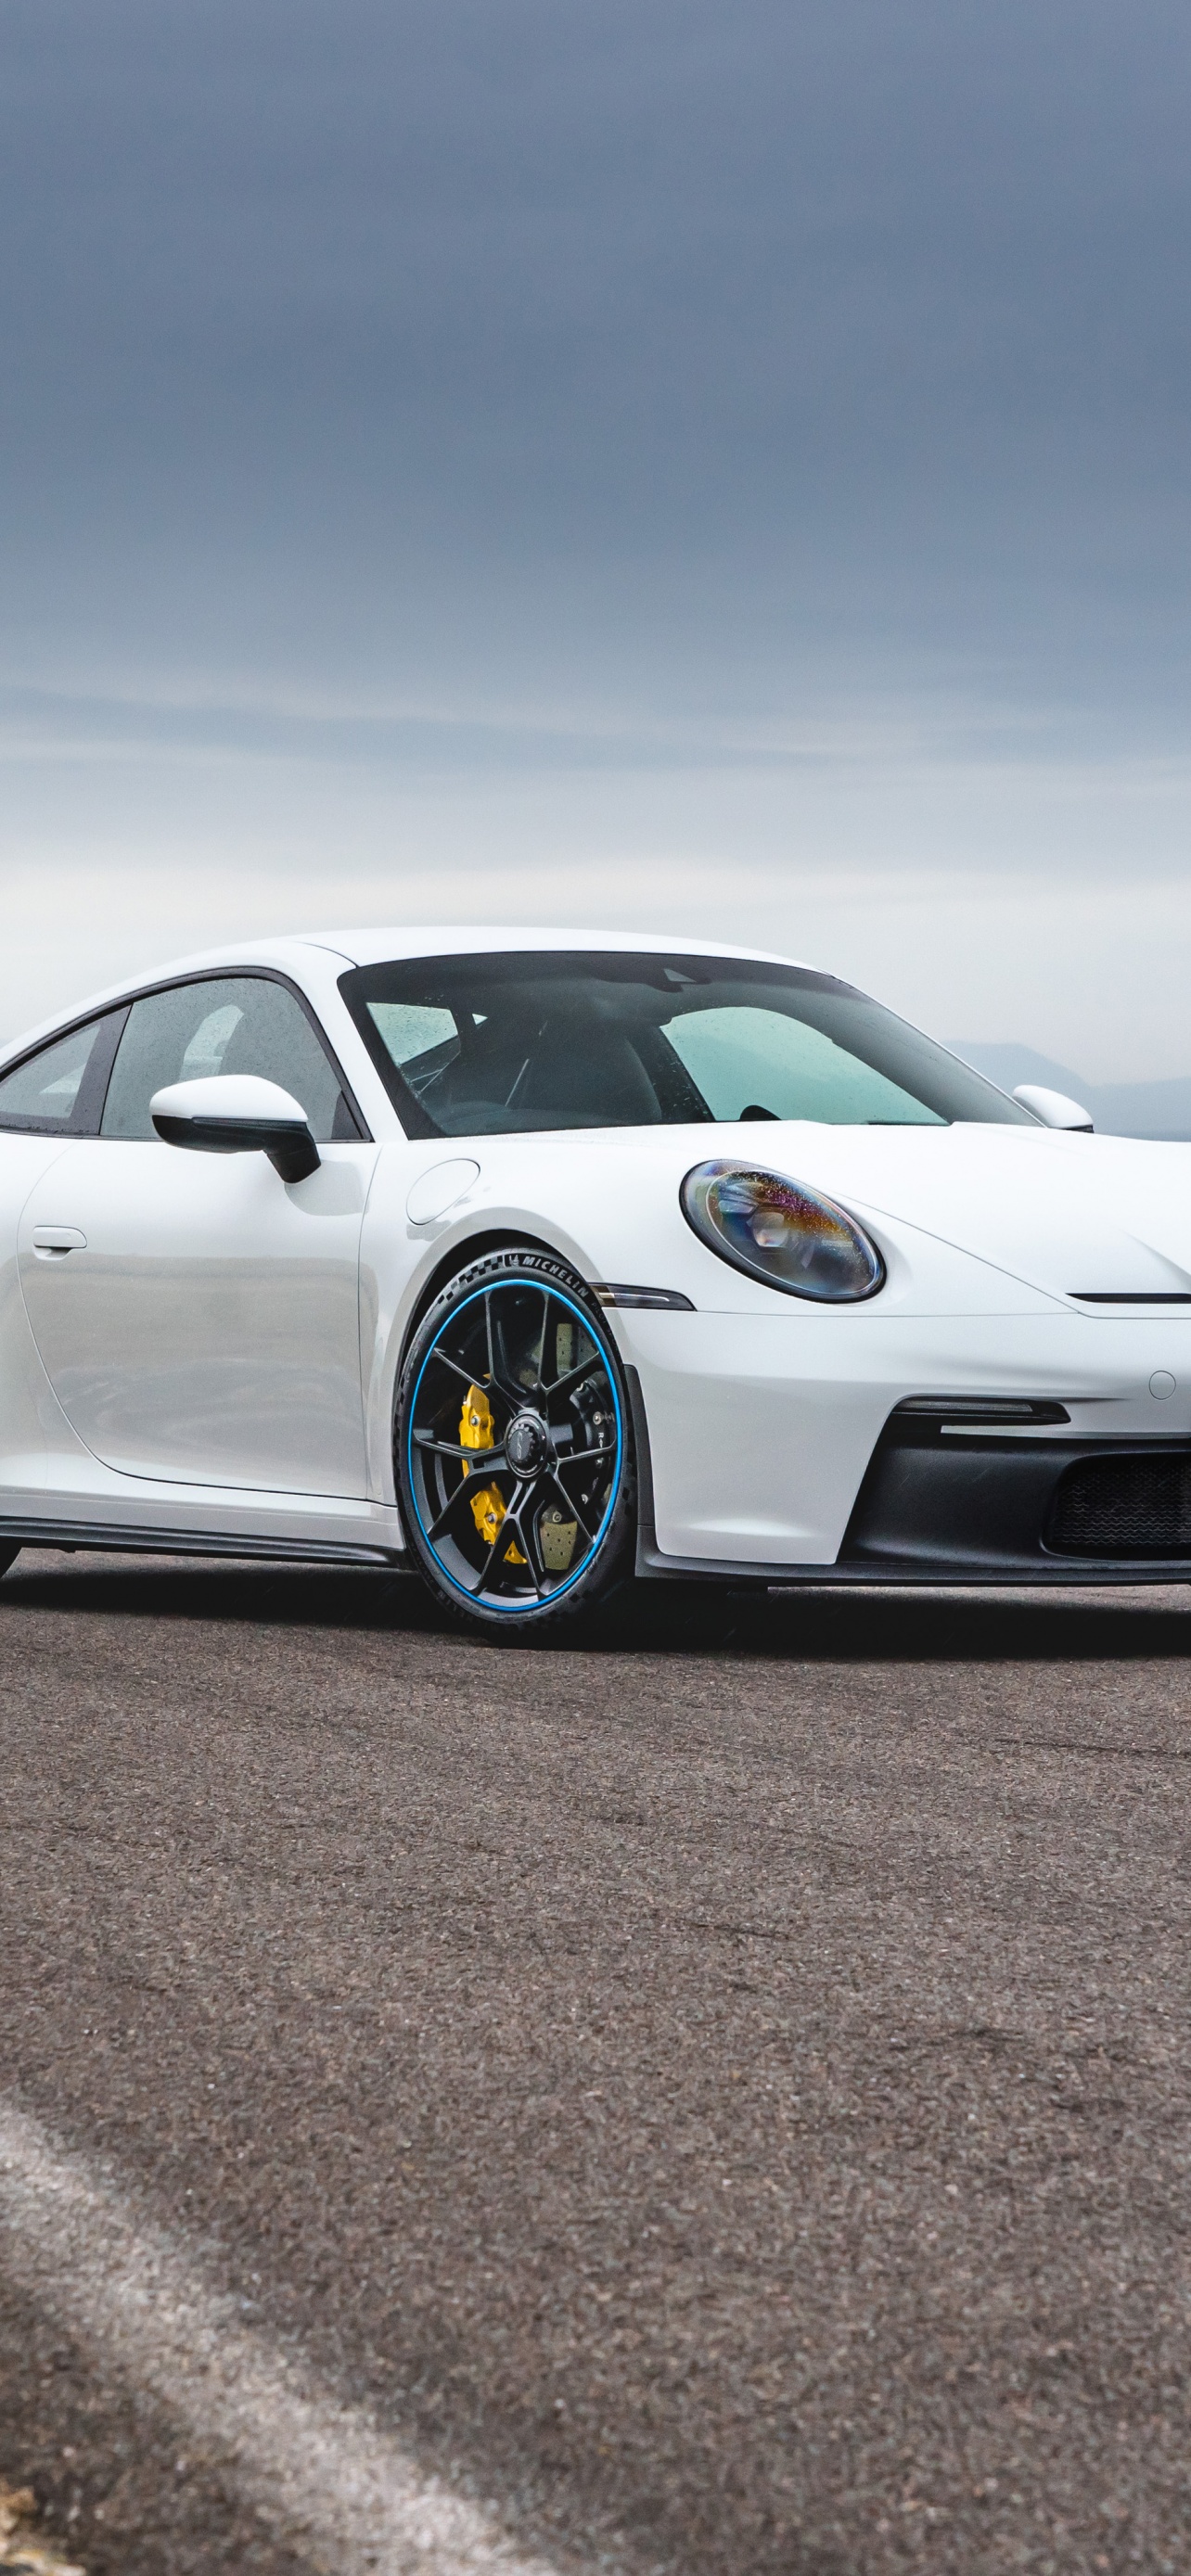 Nếu bạn là một tín đồ của siêu xe thể thao, chiếc Porsche 911 GT3 PDK chắc chắn sẽ làm bạn say mê không ngừng. Hãy xem ngay hình nền 4K của chiếc siêu xe này để cảm nhận được vẻ đẹp rực rỡ của nó. Hình ảnh này sẽ khiến bạn muốn sở hữu chiếc siêu xe đang \